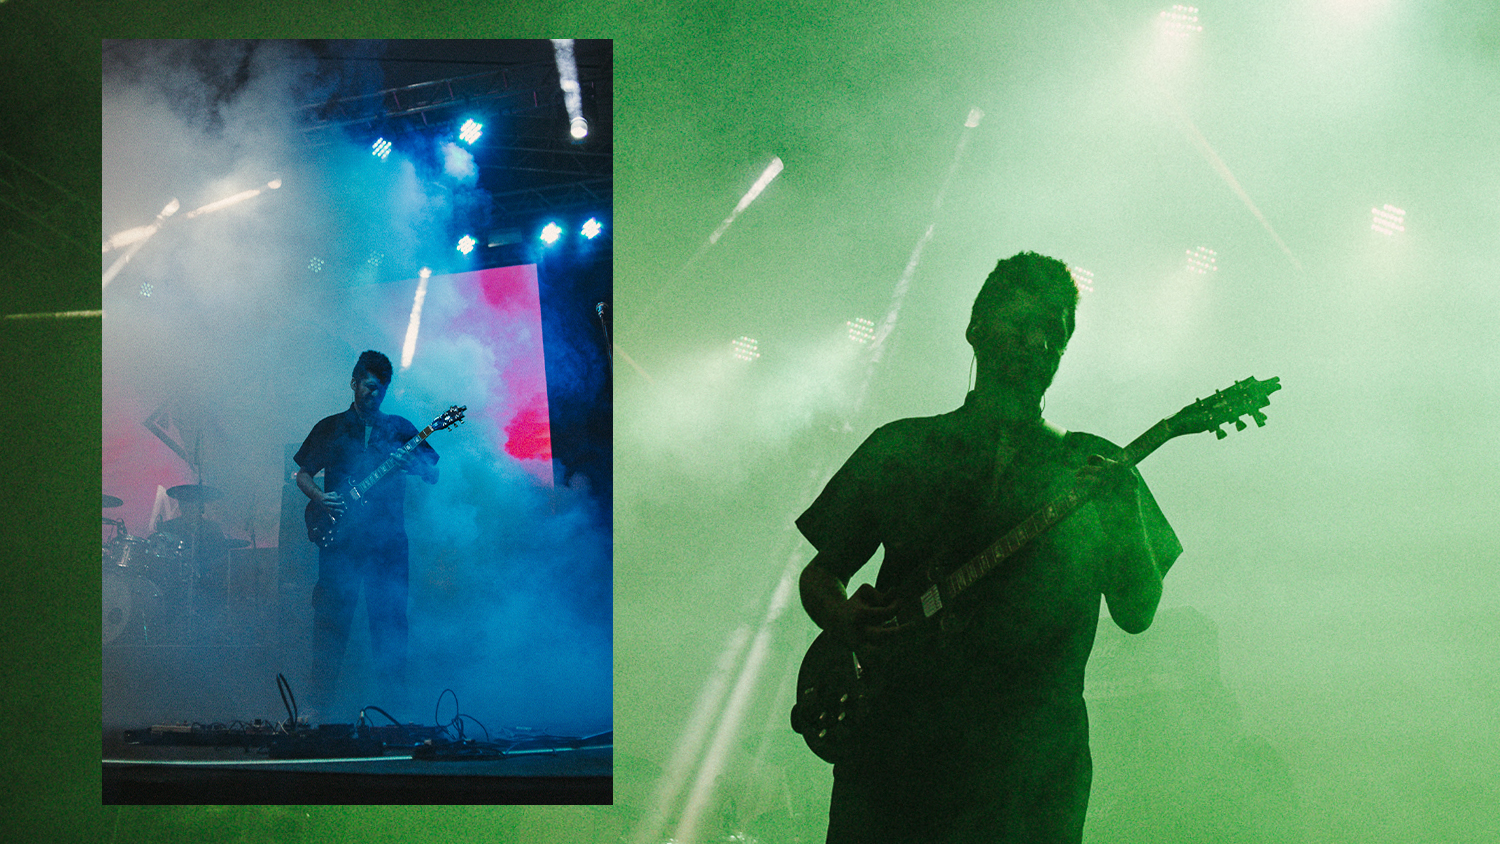 fotografia de banda de metal tocando no festival com luzes coloridas